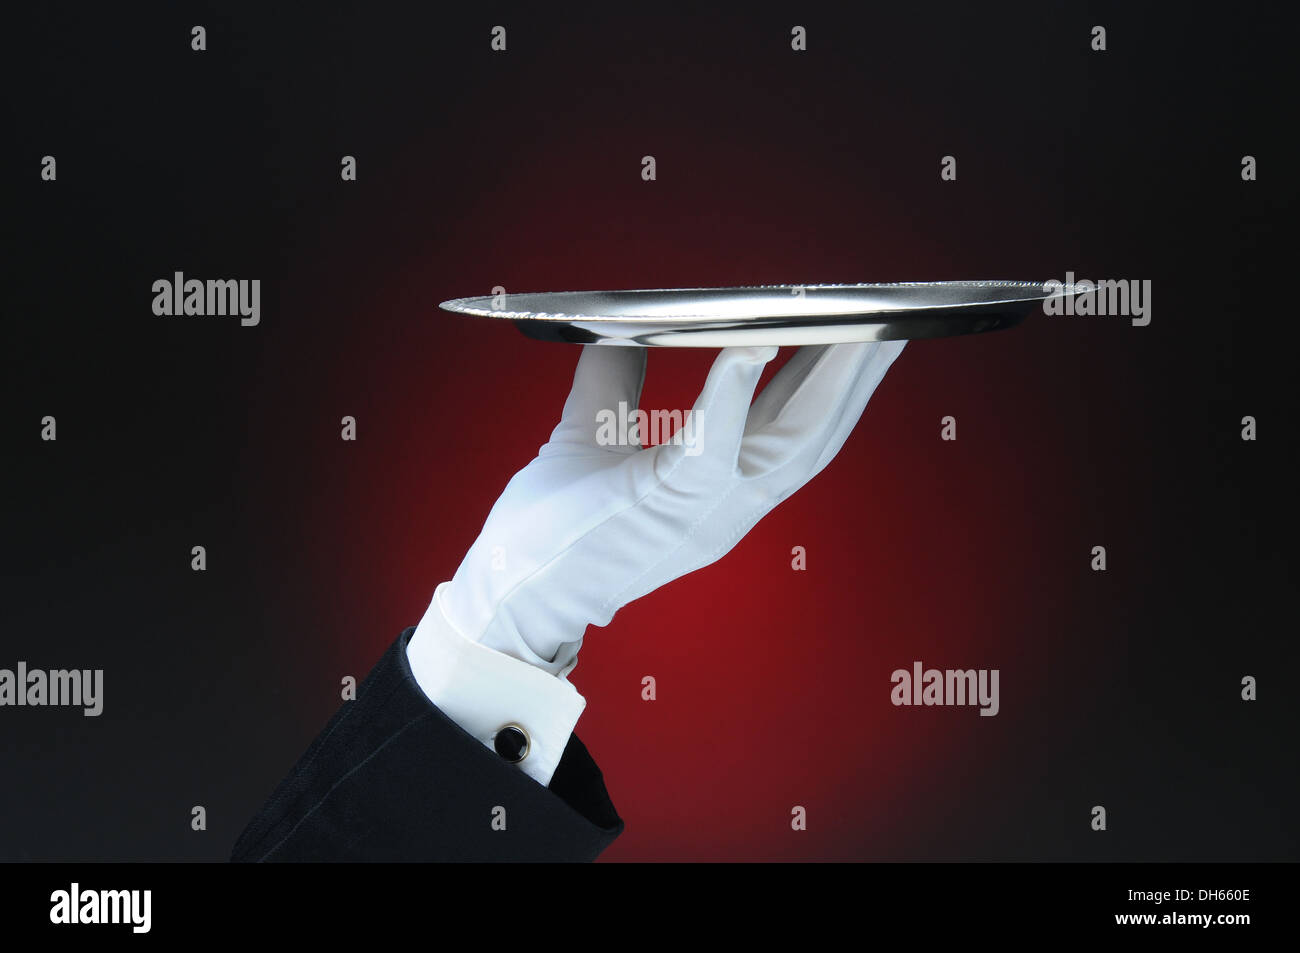 Nahaufnahme des Kellners Hand hält einen silbernen Tablett in seinen Fingerspitzen über eine leichte ot dunkelroten Hintergrund. Stockfoto